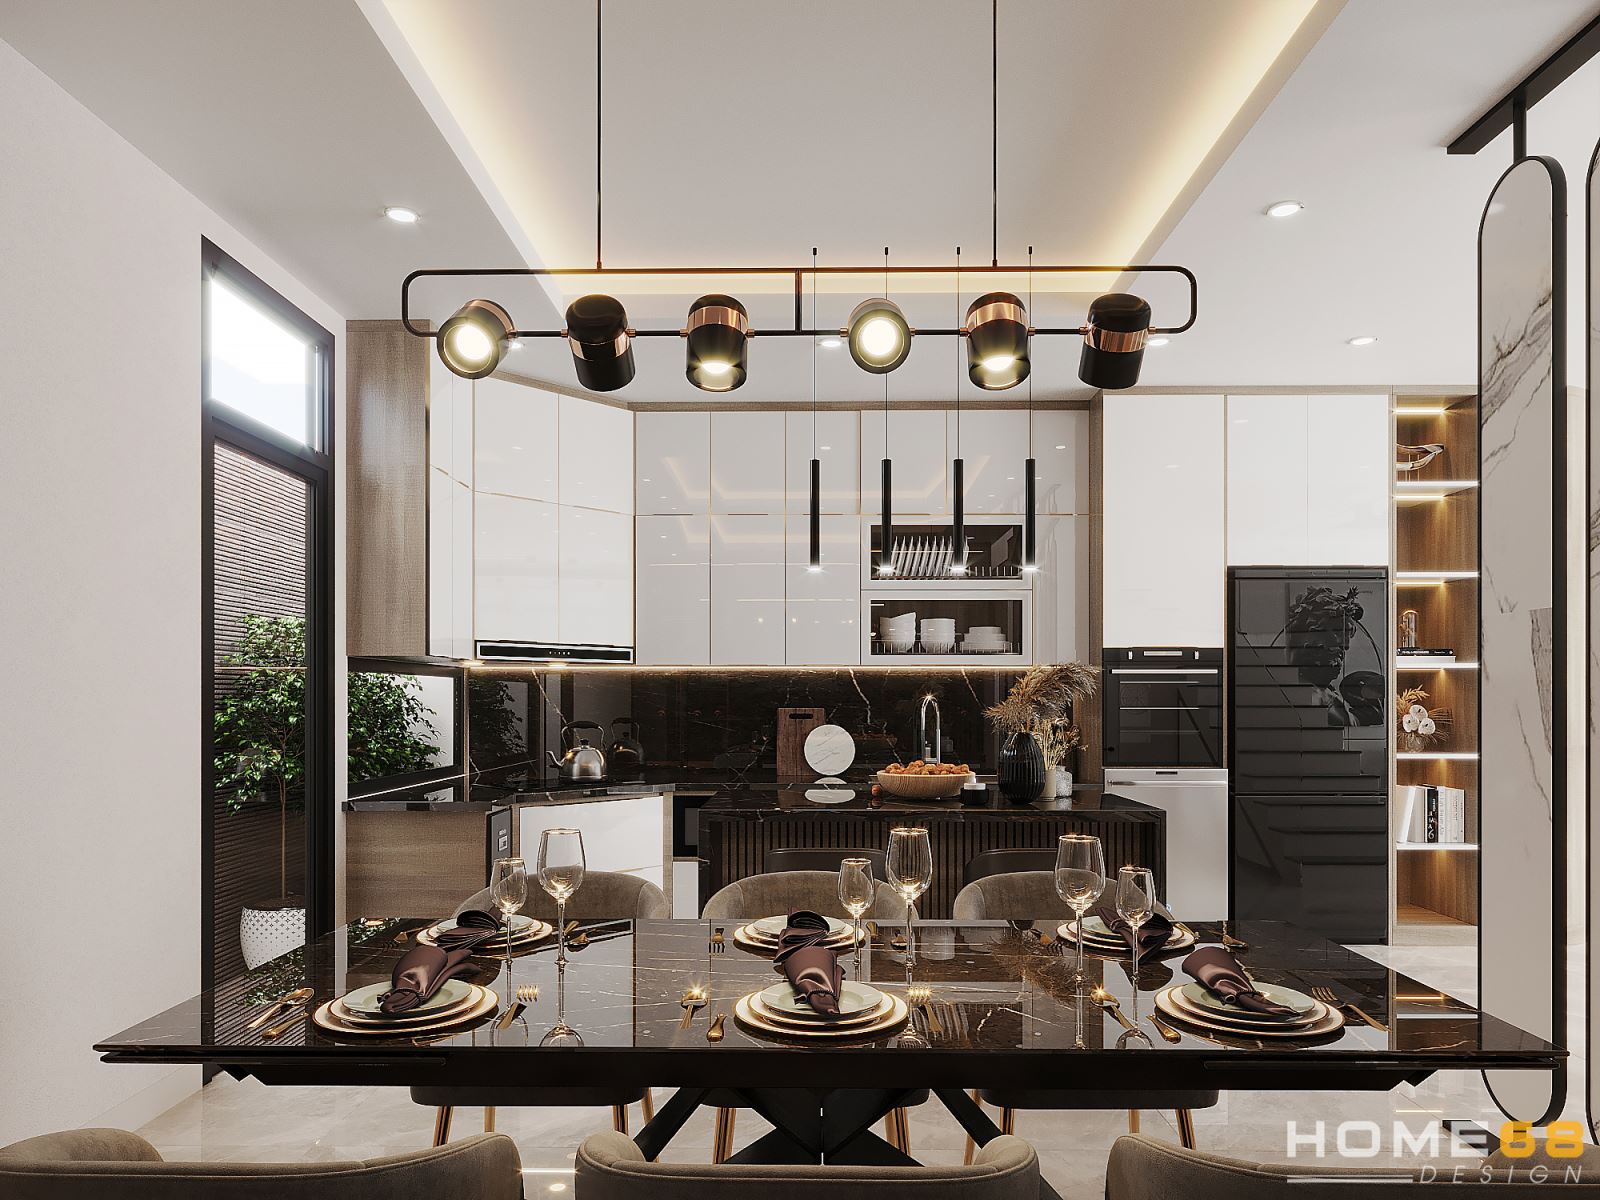 HOME68 thiết kế nội thất bếp hiện đại, tiện nghi tại Hải Phòng